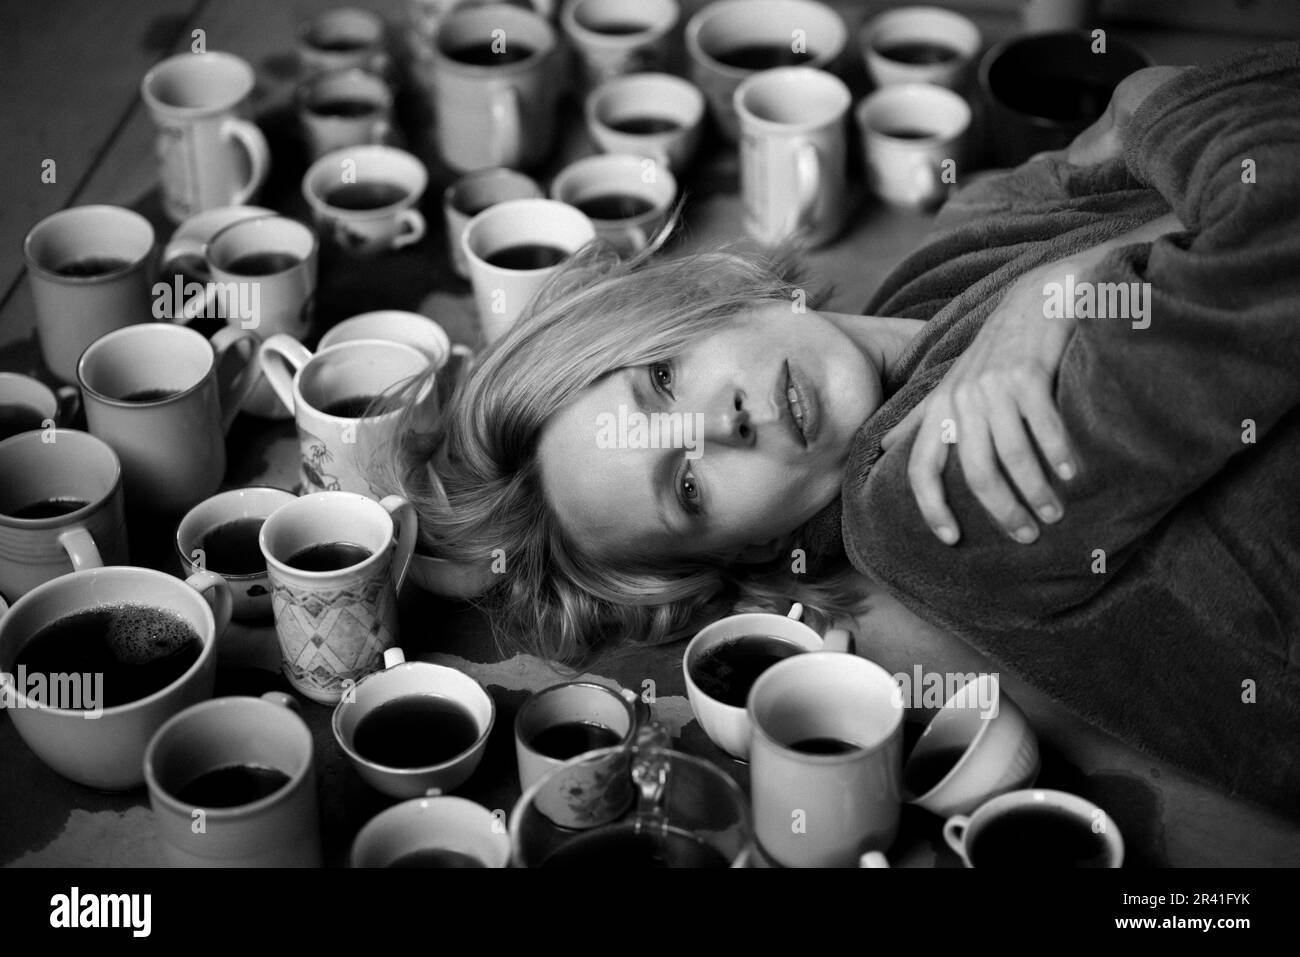 Femme entourée de nombreuses tasses de café, échéance concept. Le travail, les heures supplémentaires, la nécessité d'être alerte. Femme fatiguée. Photo en noir et blanc. Banque D'Images